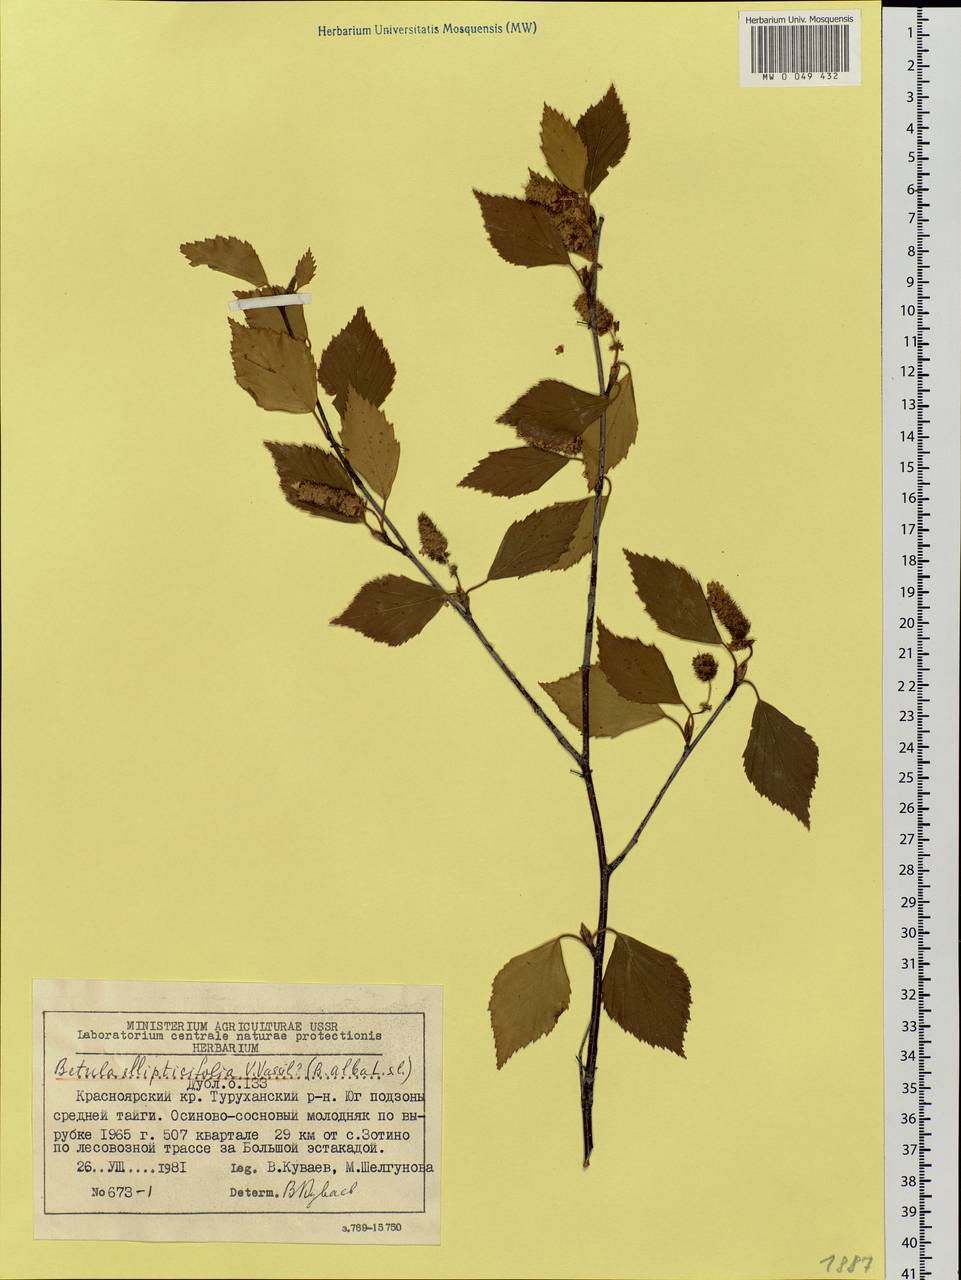 Betula pendula subsp. pendula, Siberia, Central Siberia (S3) (Russia)